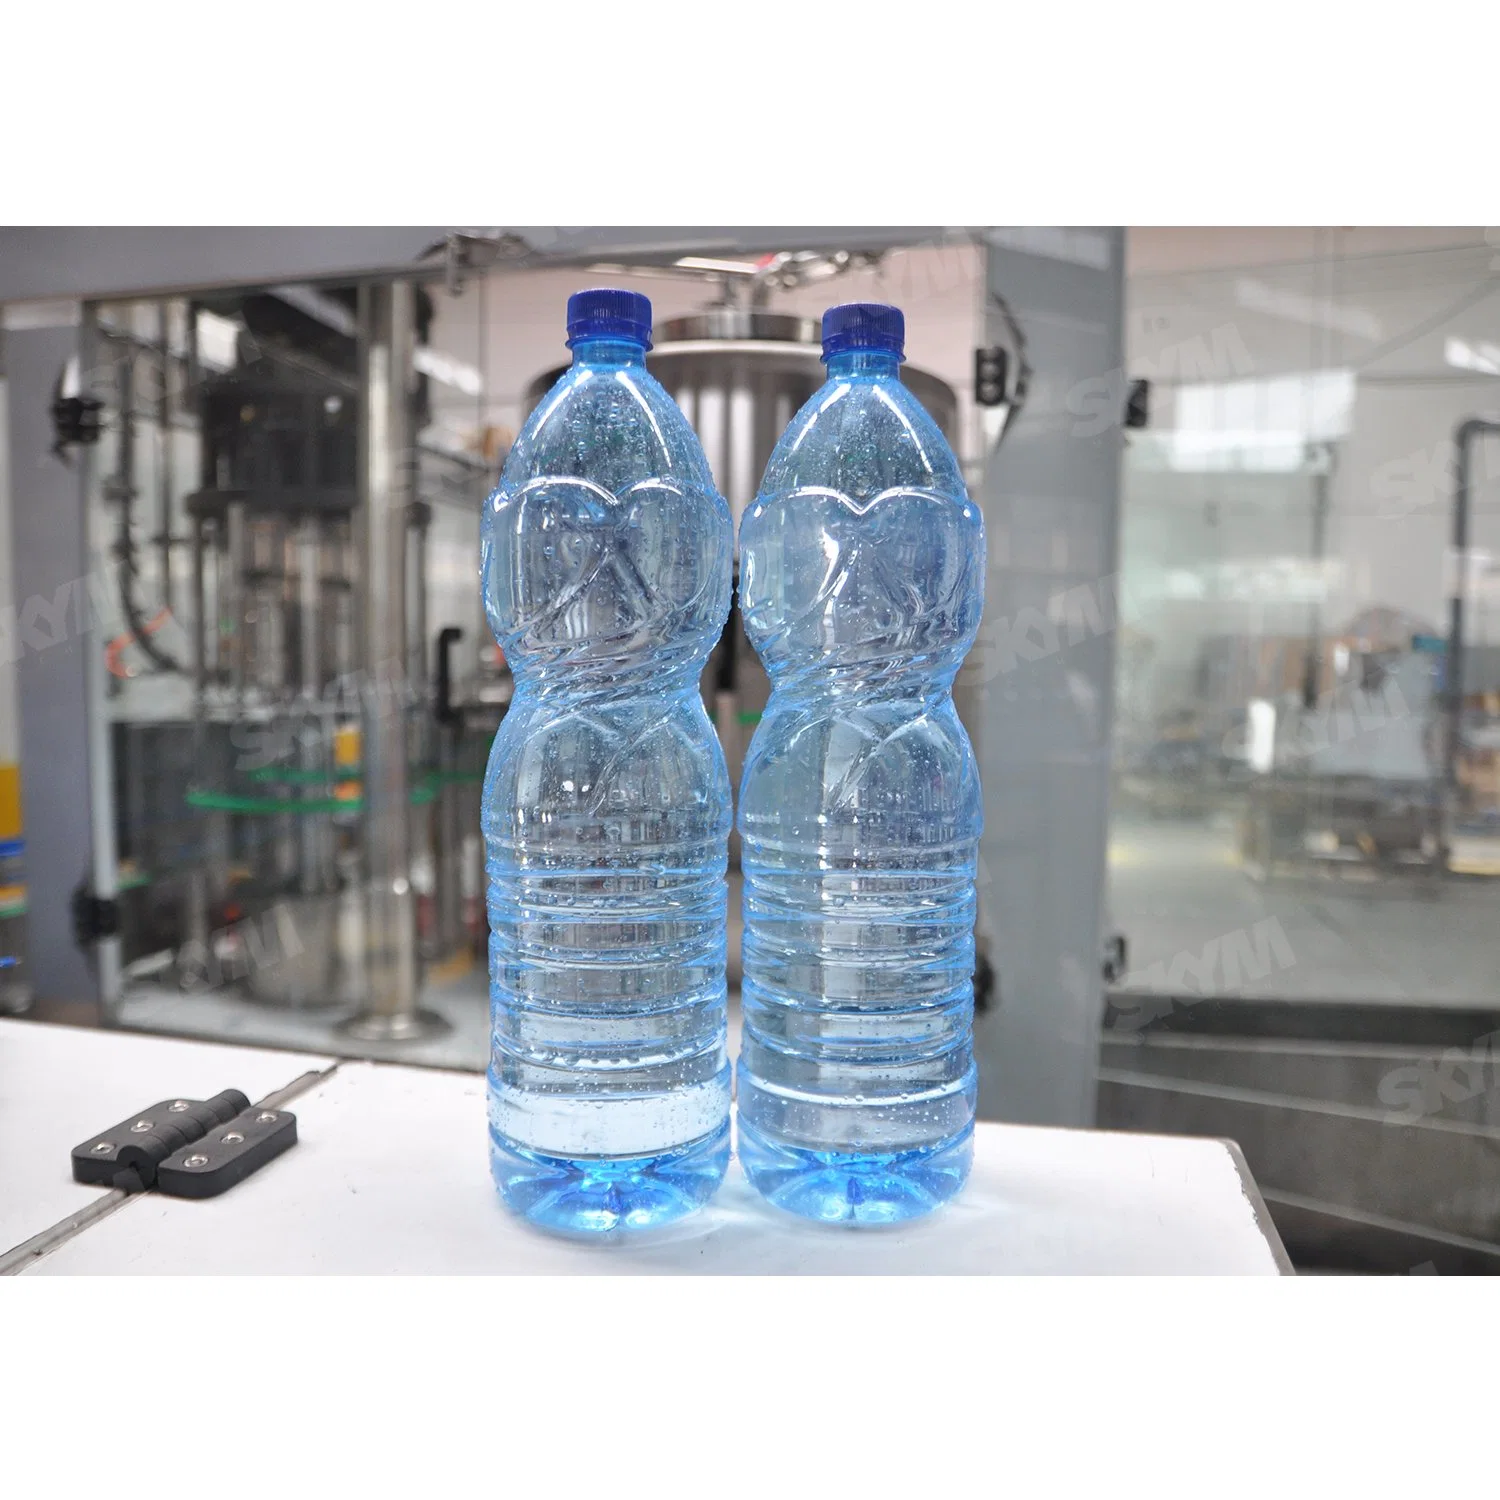 Máquina automática de llenado y embotellado de agua mineral, agua pura, bebidas alcohólicas y vino en botellas de plástico, vidrio y PET de 330 ml, 500 ml y 1500 ml.